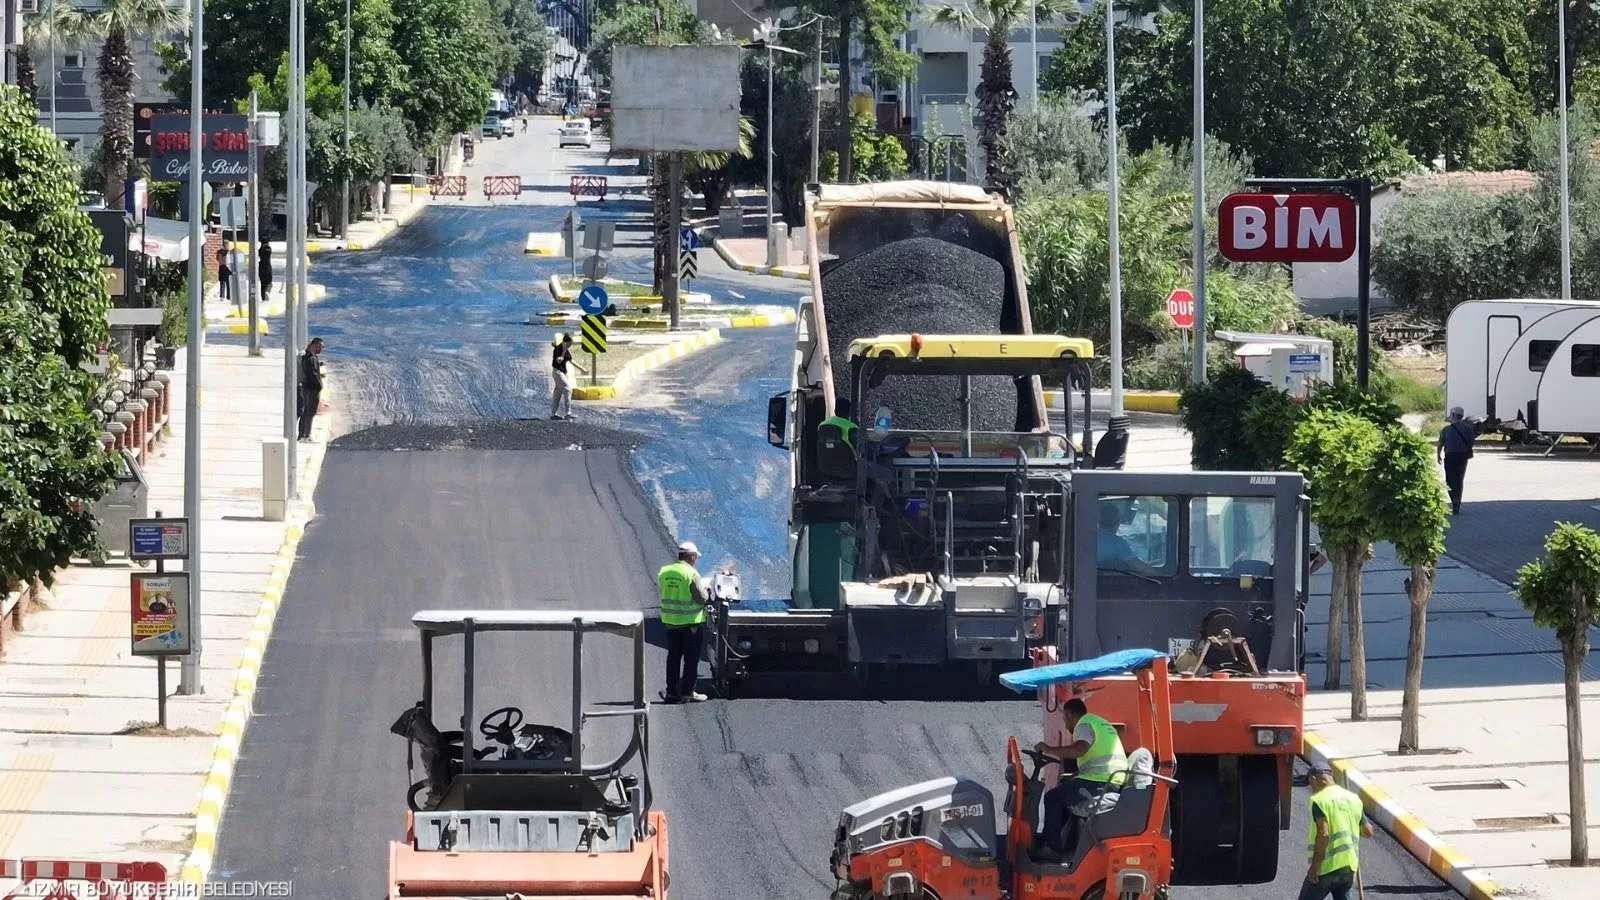 İzmir Büyükşehir Belediye Başkanı Dr. Cemil Tugay'ın başlattığı 180 günlük "Hızlı Eylem Planı" kapsamında, kentin dört bir yanında yoğun şikayet alan bozuk yollar onarılıyor.